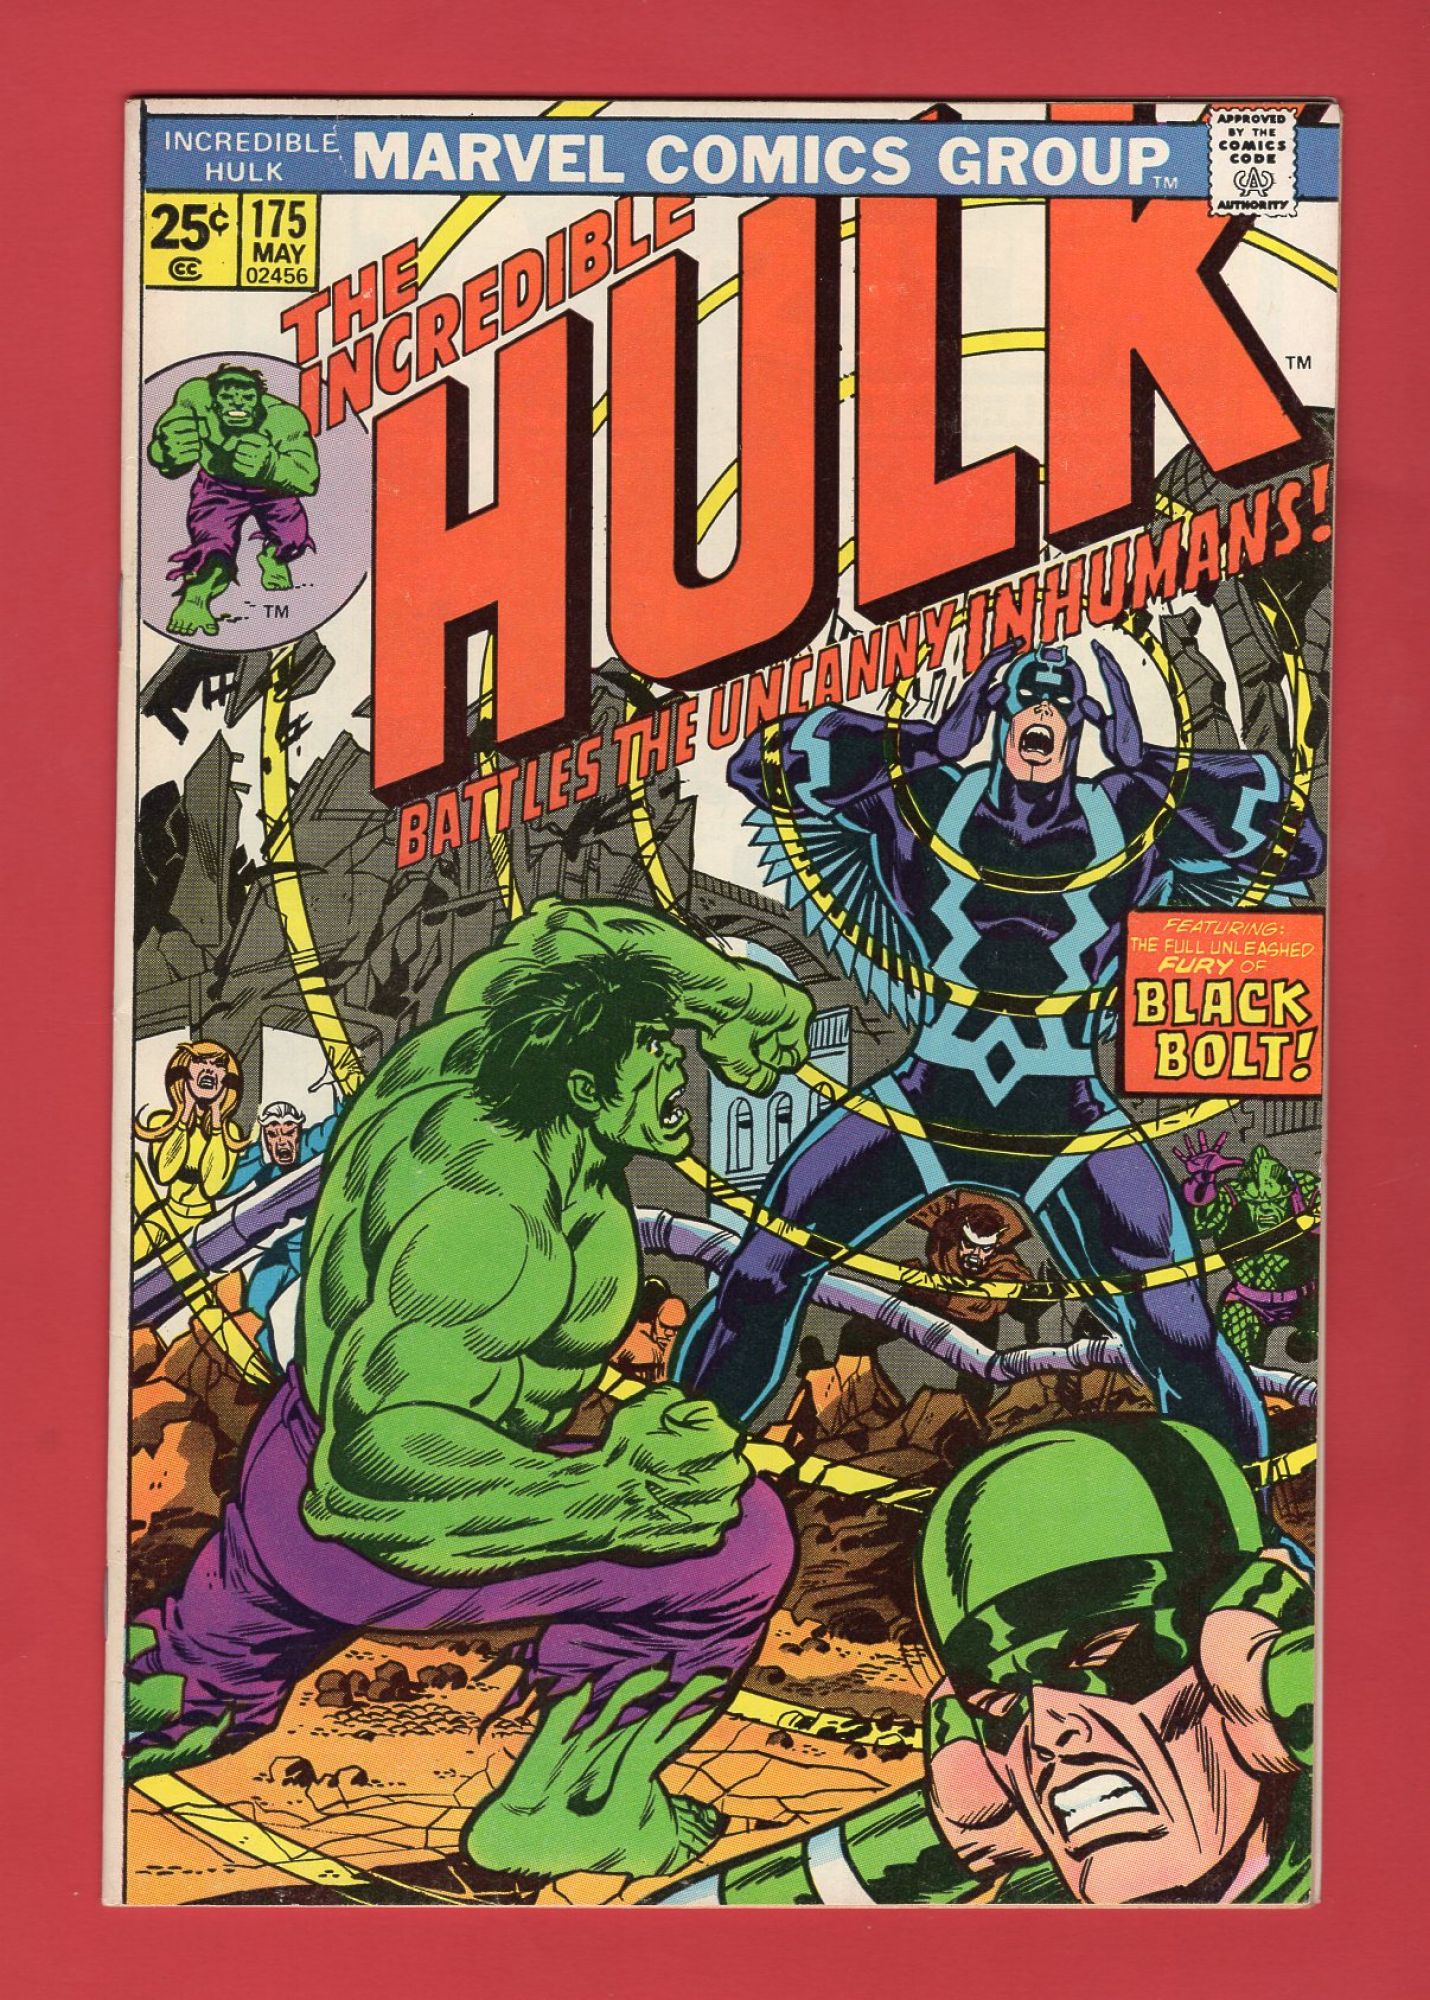 Incredible Hulk #175, May 1974, 7.5 VF-